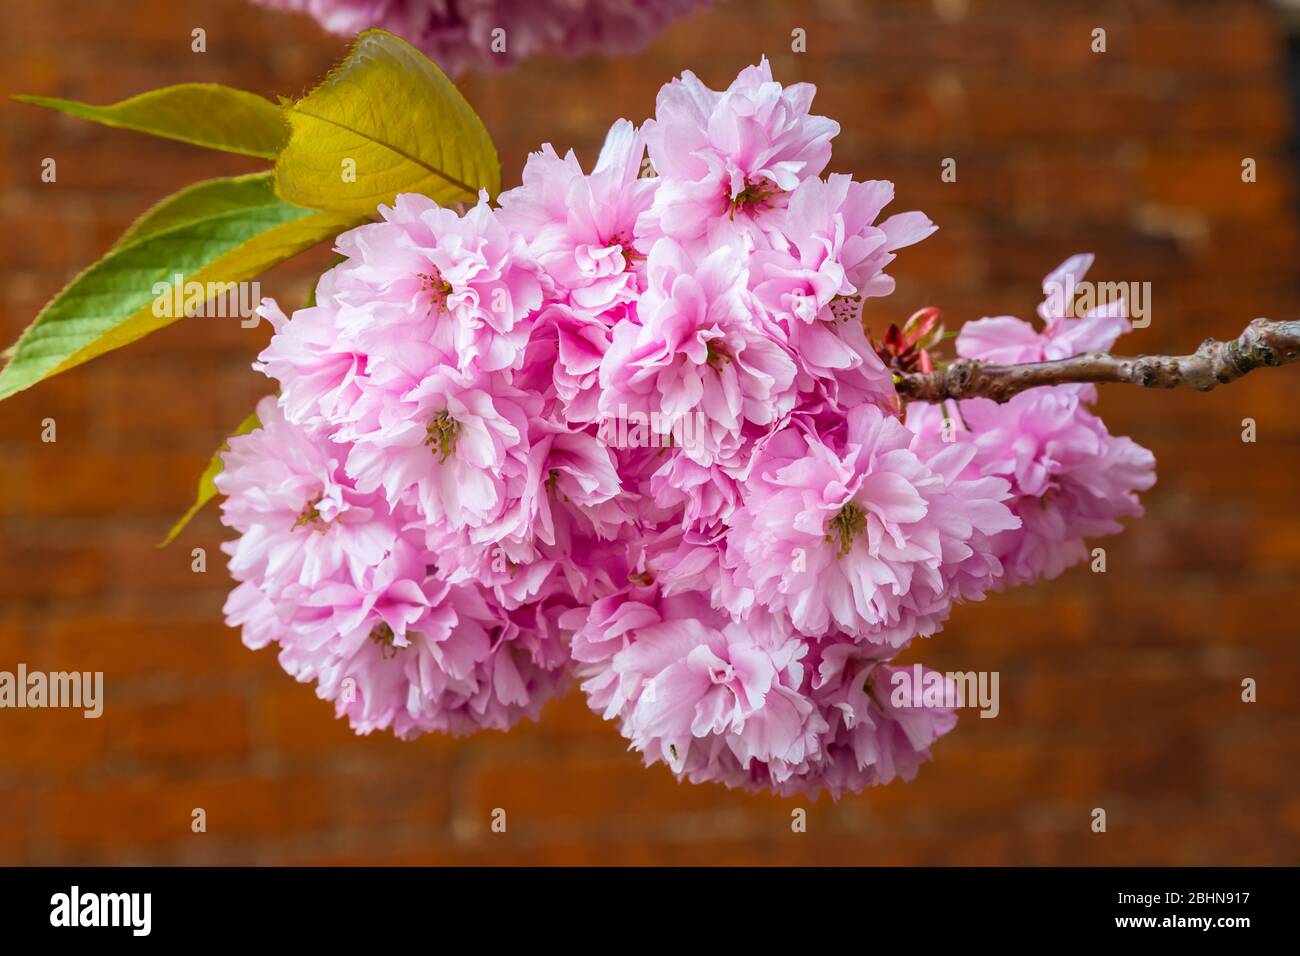 Primo piano di fiori di ciliegia rosa, un fiore di molti alberi del genere Prunus. La specie più nota è la ciliegia giapponese, Prunus serrulata. Foto Stock